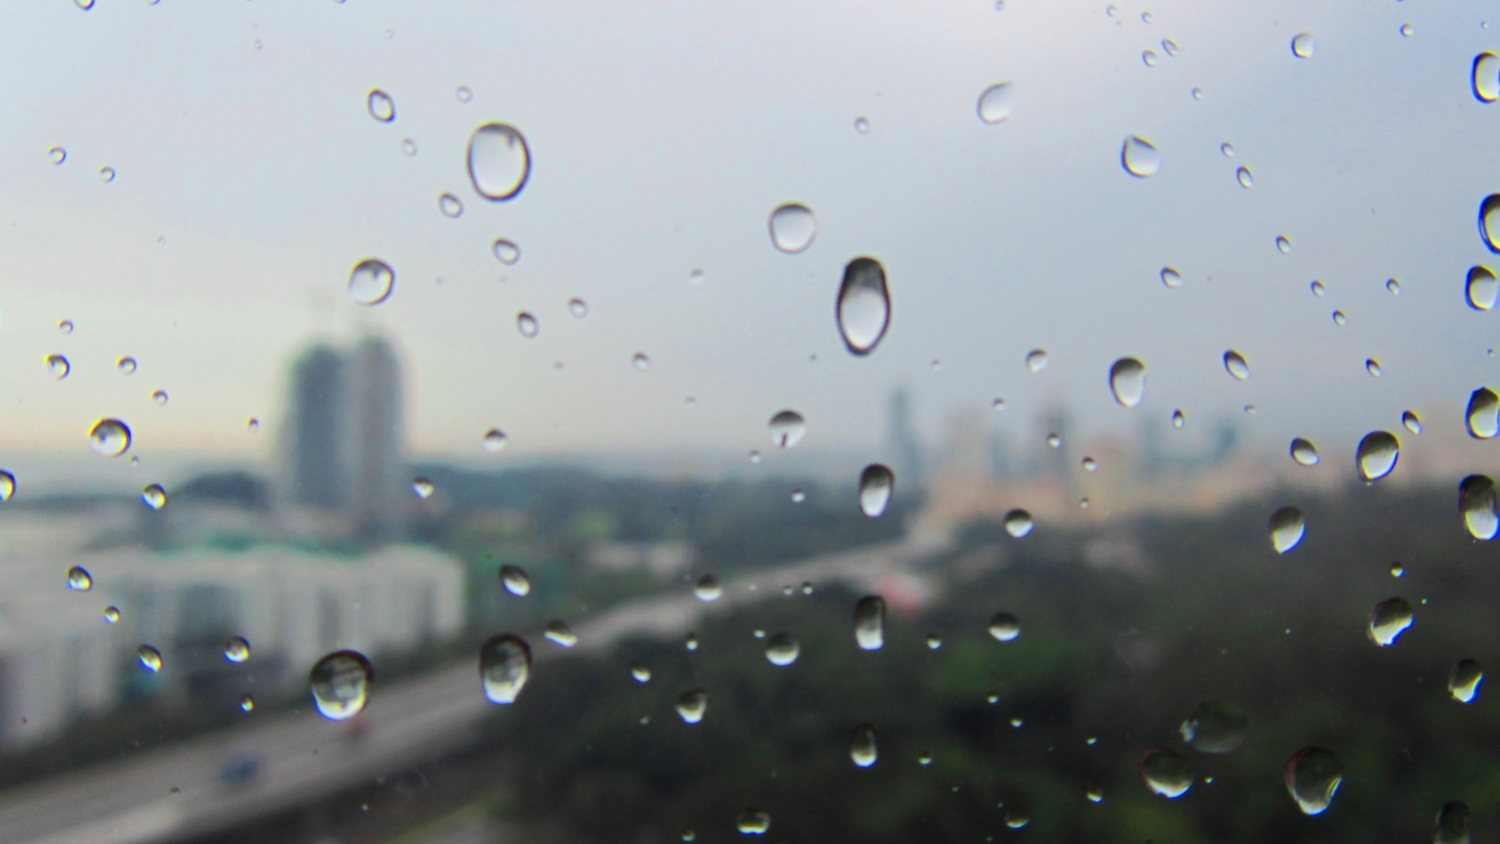 Singapour's rain